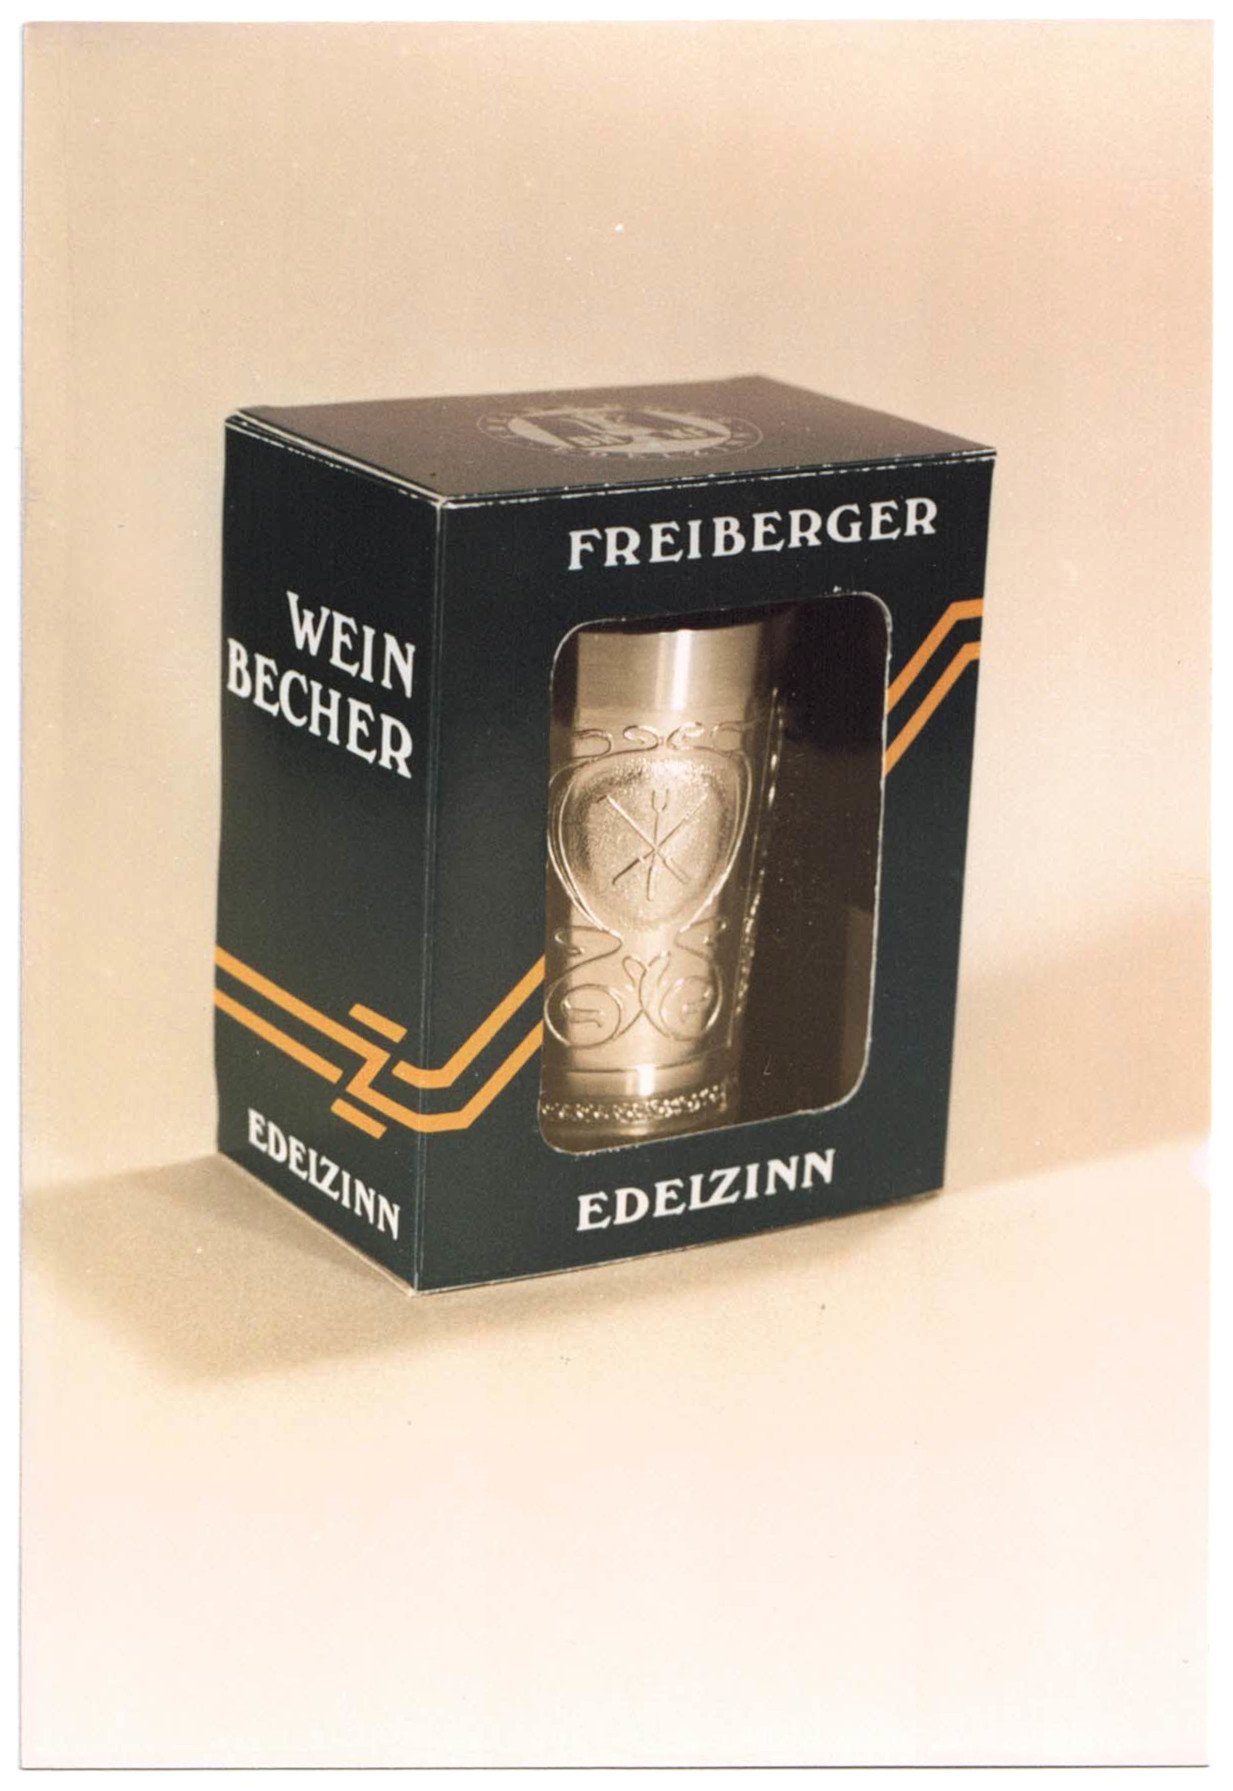 Fotografie eines Weinbechers der Marke "Freiberger Edelzinn" mit Berg- und Hüttenmann und Insignien (Saxonia-Freiberg-Stiftung CC BY-NC-SA)